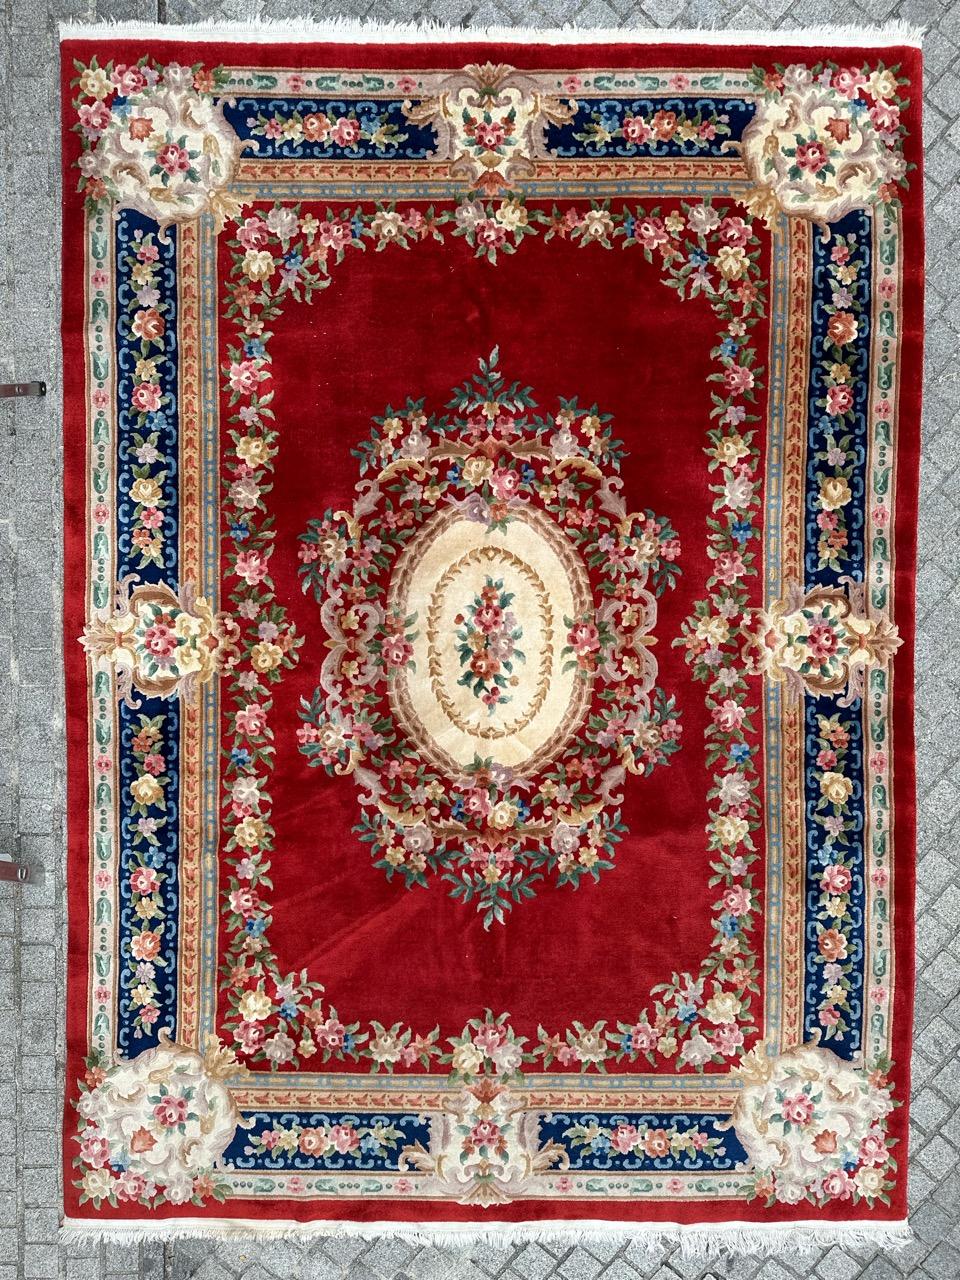  Grand tapis chinois exquis avec un superbe design floral !

Ce tapis remarquable présente un fond rouge vibrant qui met en scène un médaillon blanc saisissant. Le médaillon est magnifiquement orné d'un bouquet de fleurs dans les tons vert, orange,